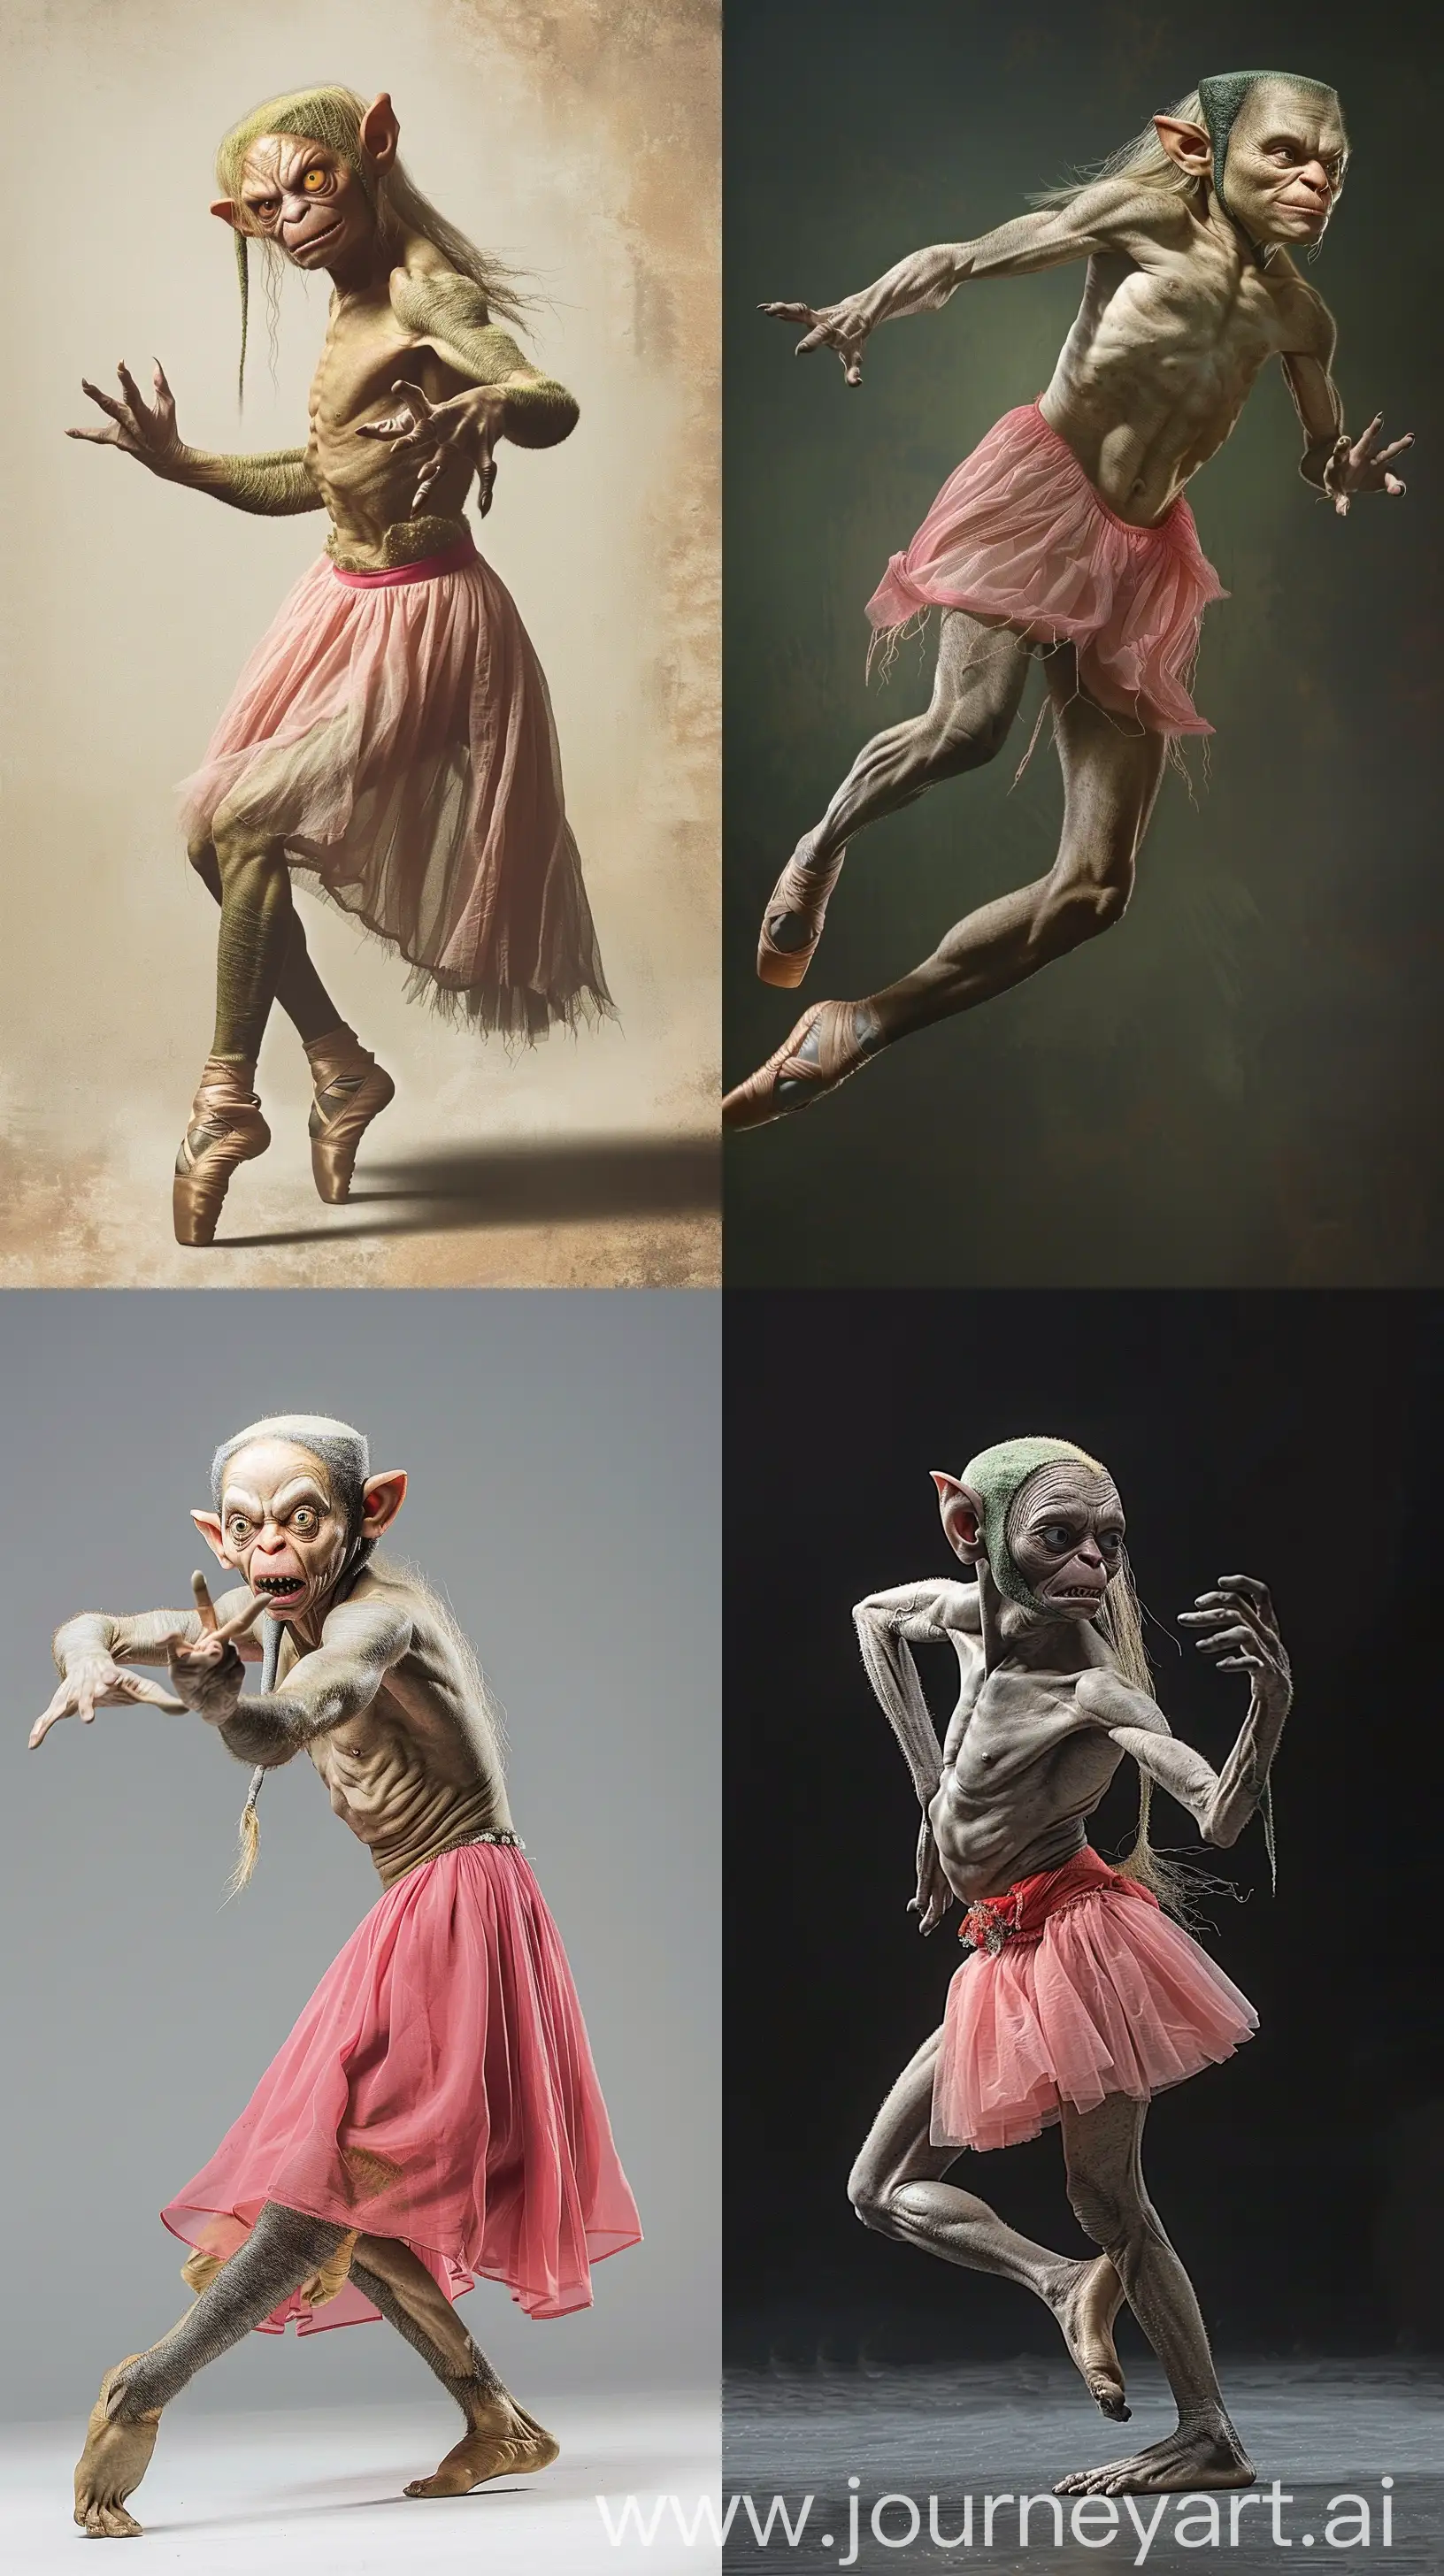 a Gollum wearing a pink skirt and dancing ballet --ar 9:16
